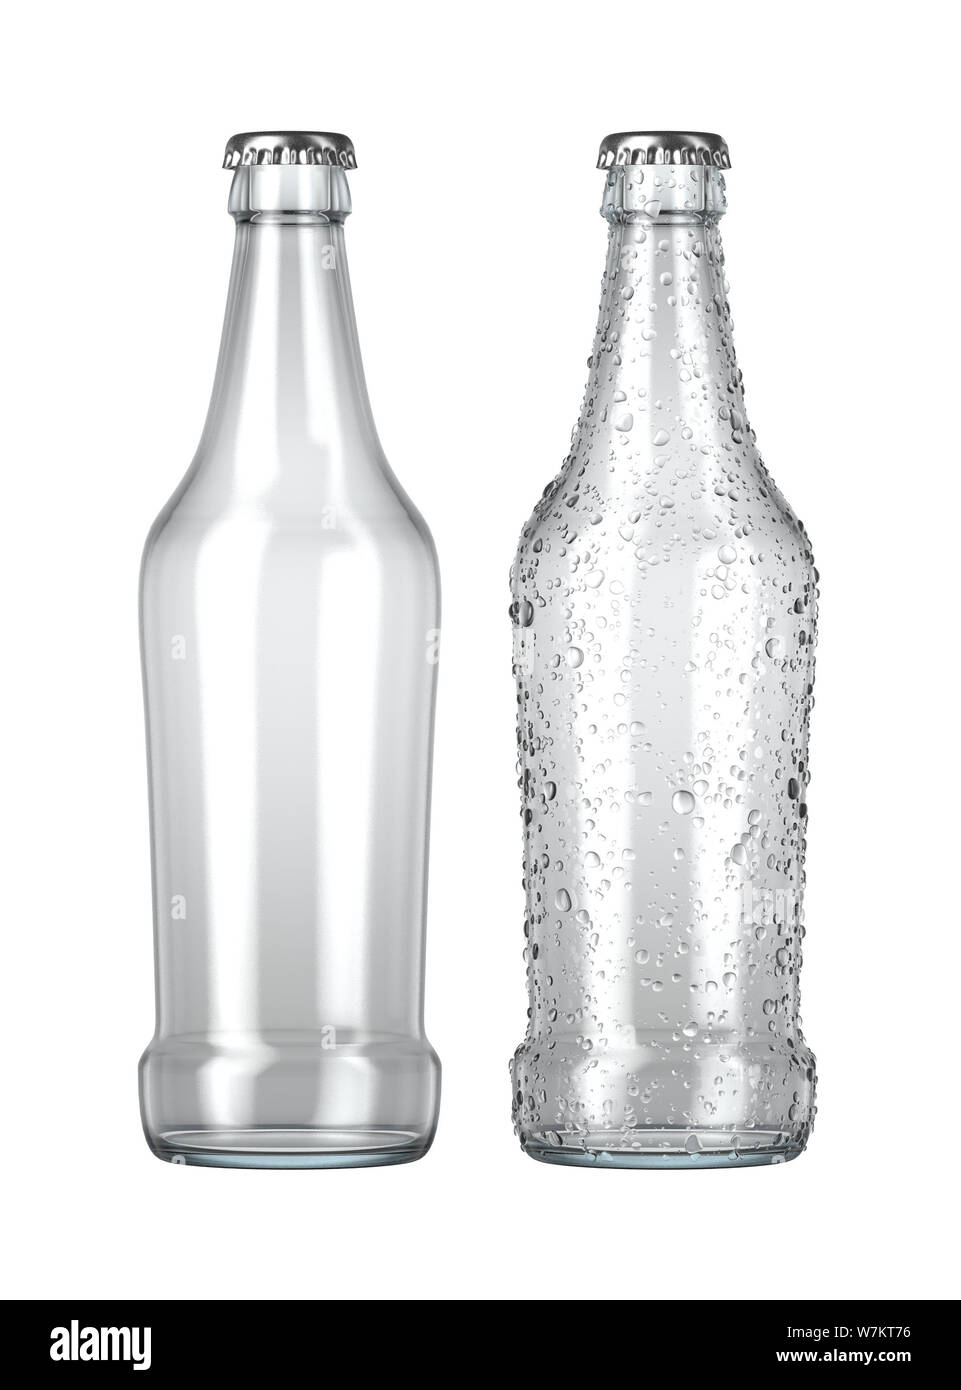 Ein einfaches klares Glas Bier Flasche neben einem anderen mit Tröpfchen von Kondensation auf einer isolierten weißen studio Hintergrund - 3D-Rendering Stockfoto